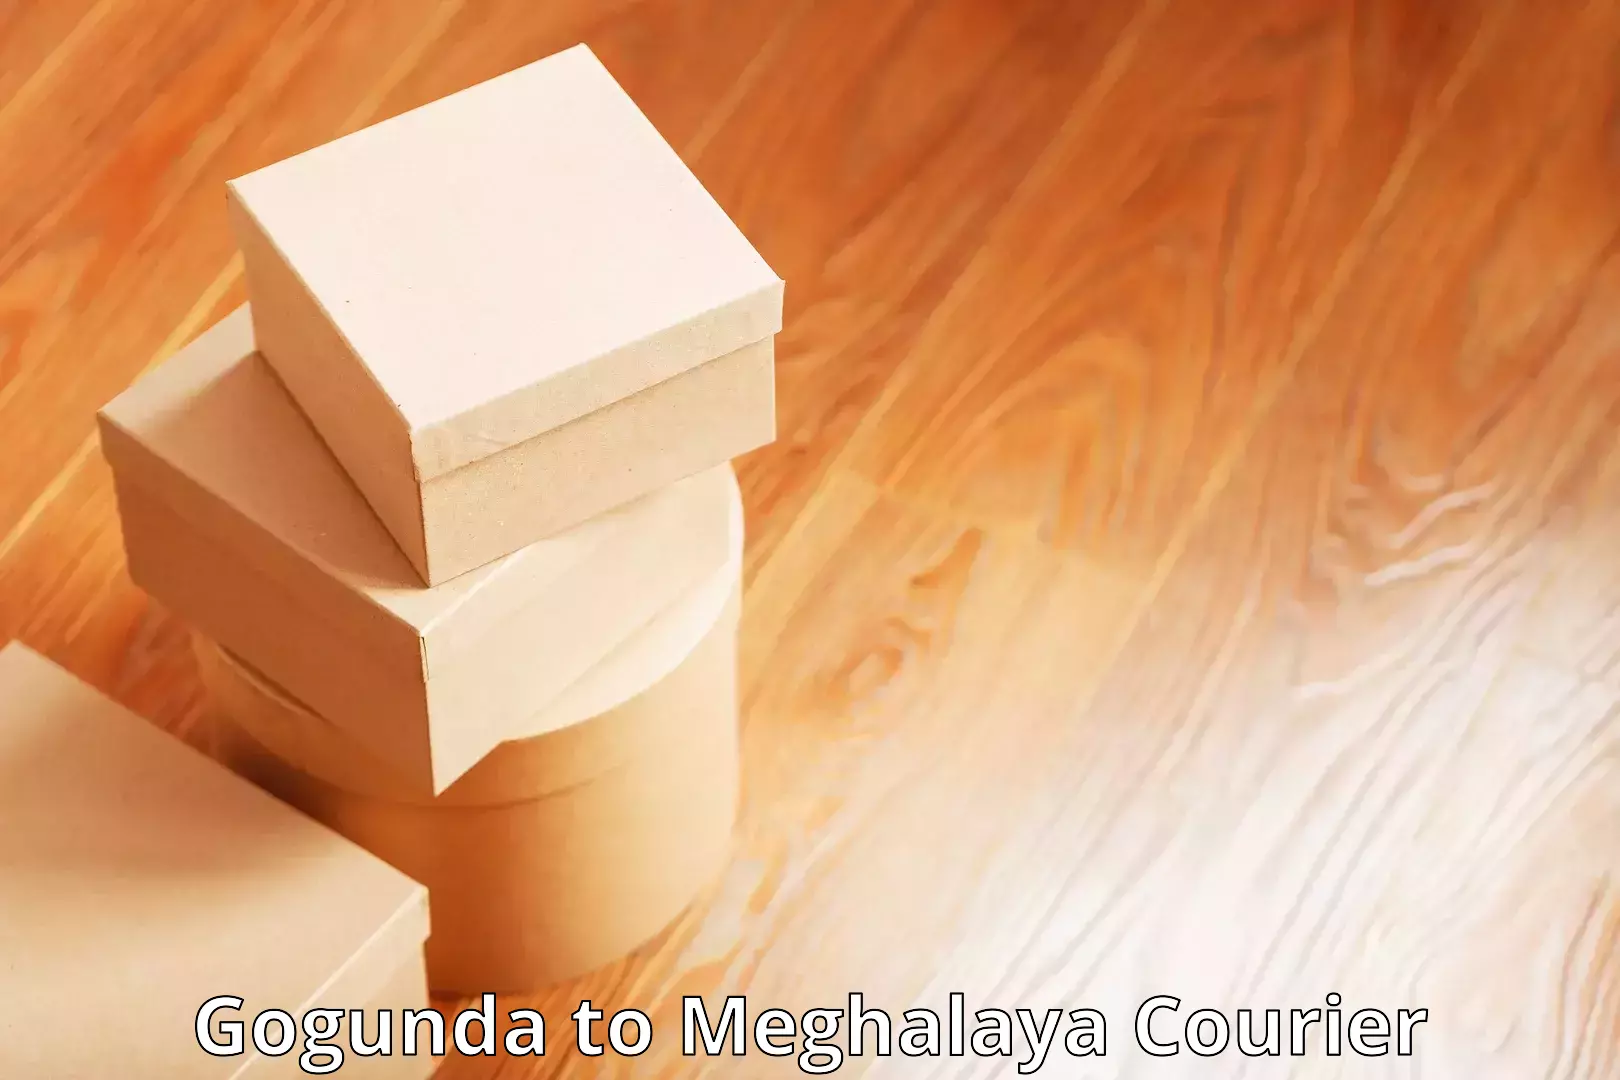 E-commerce fulfillment Gogunda to Meghalaya